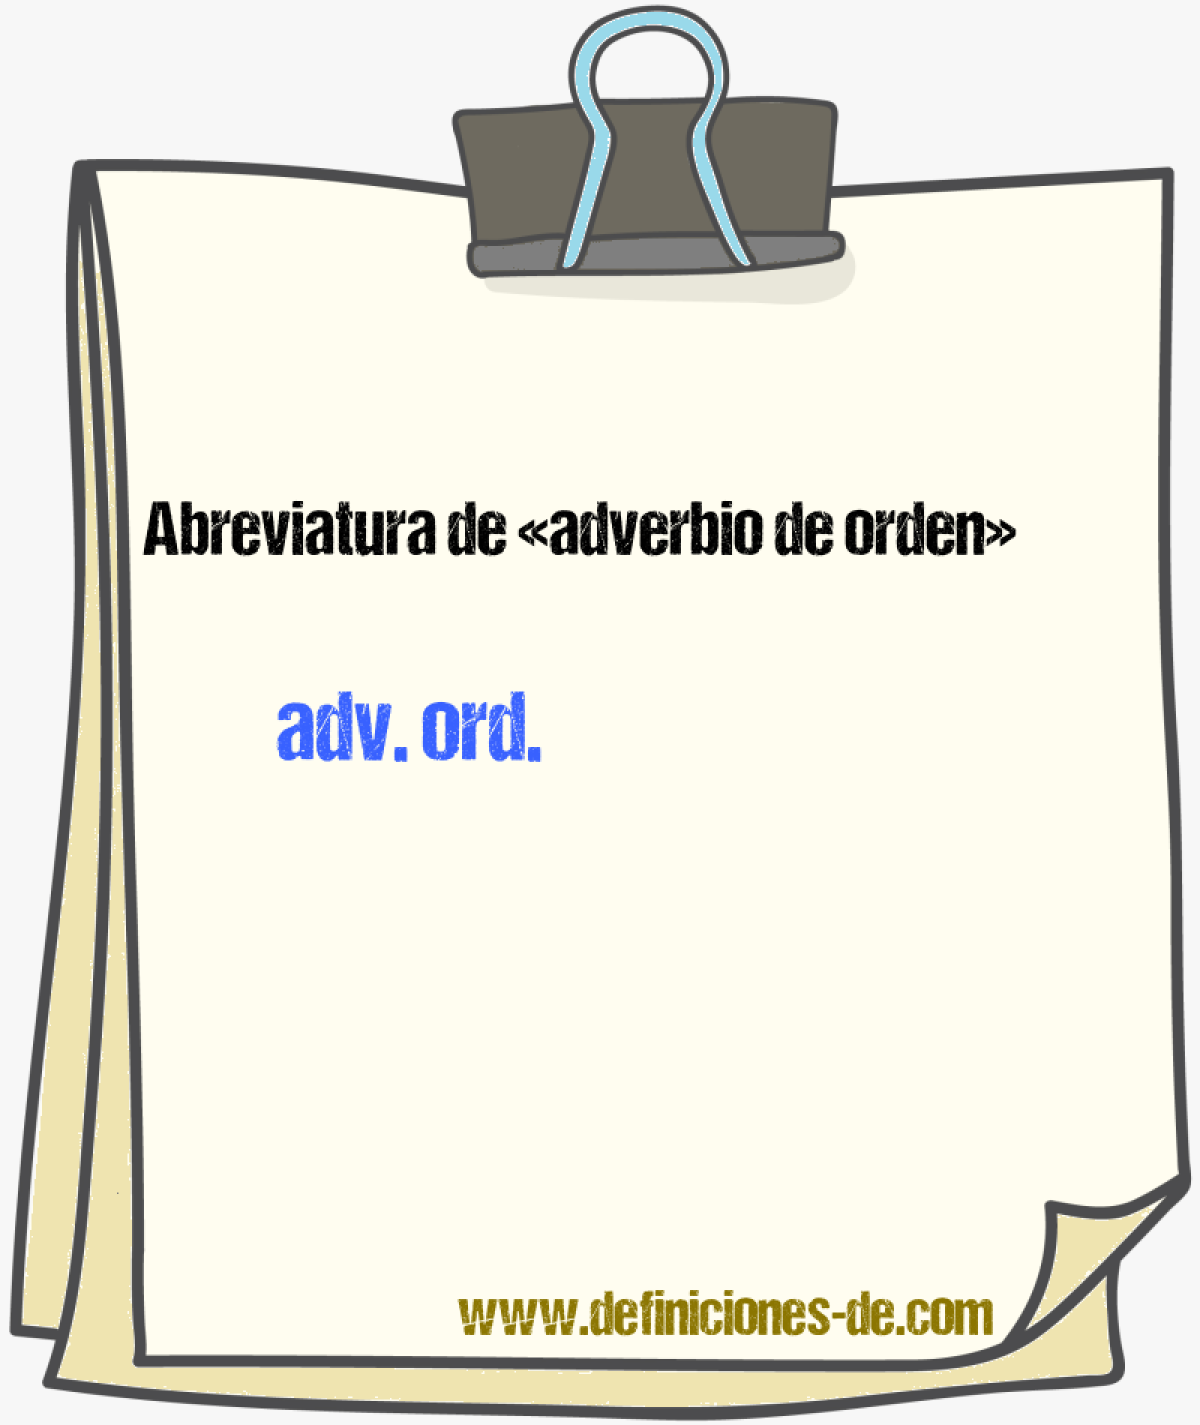 Abreviaturas de adverbio de orden